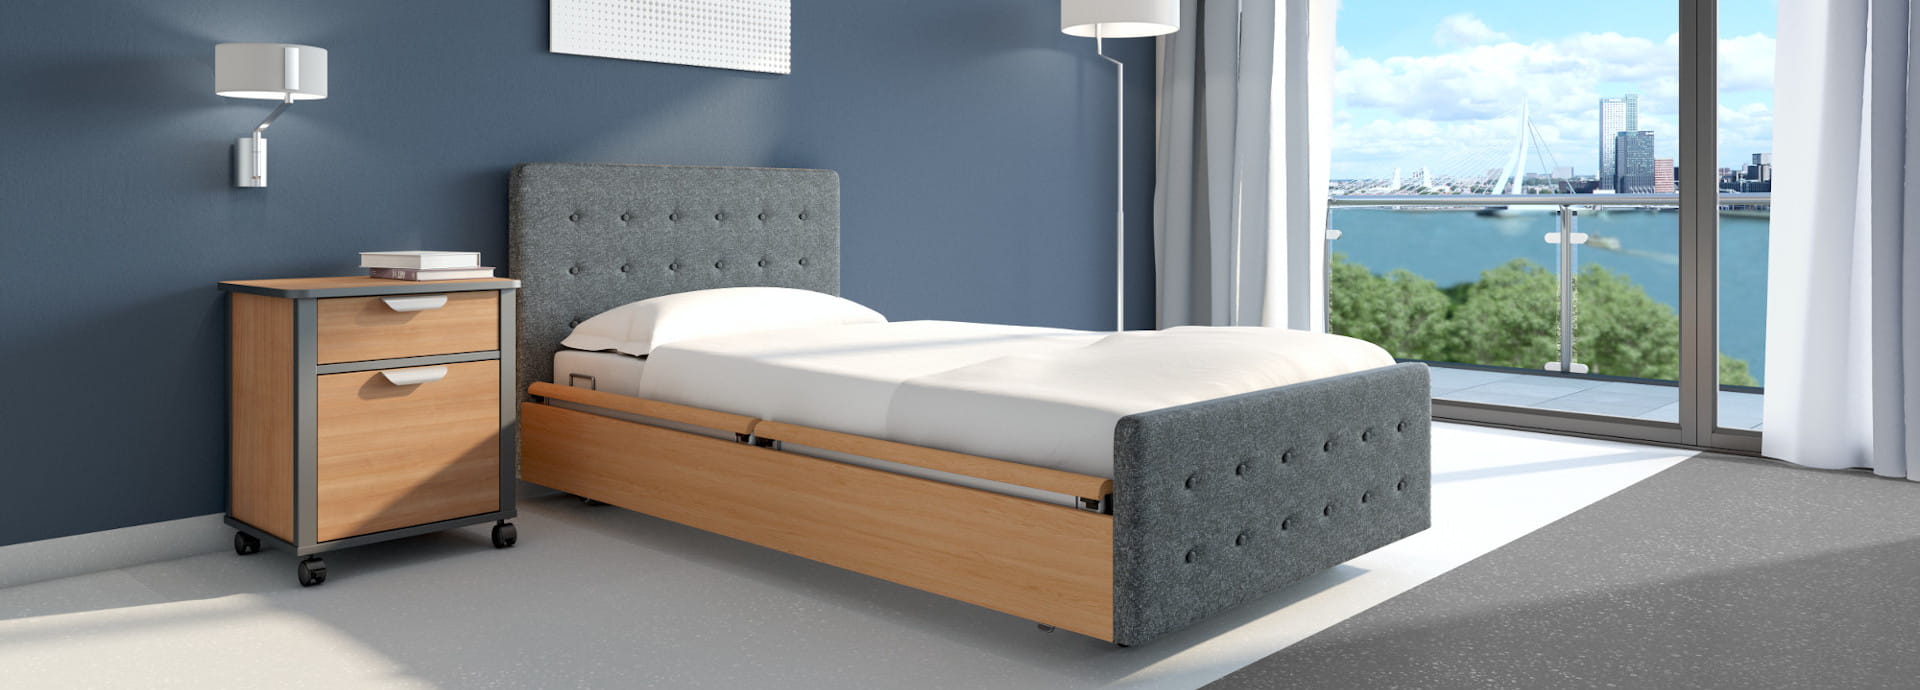 wissner-bosserhoff steht für hochwertige Pflegebetten für Altenheime, stationäre und teilstationäre Pflegeheime, Krankenhäuser und Kliniken.